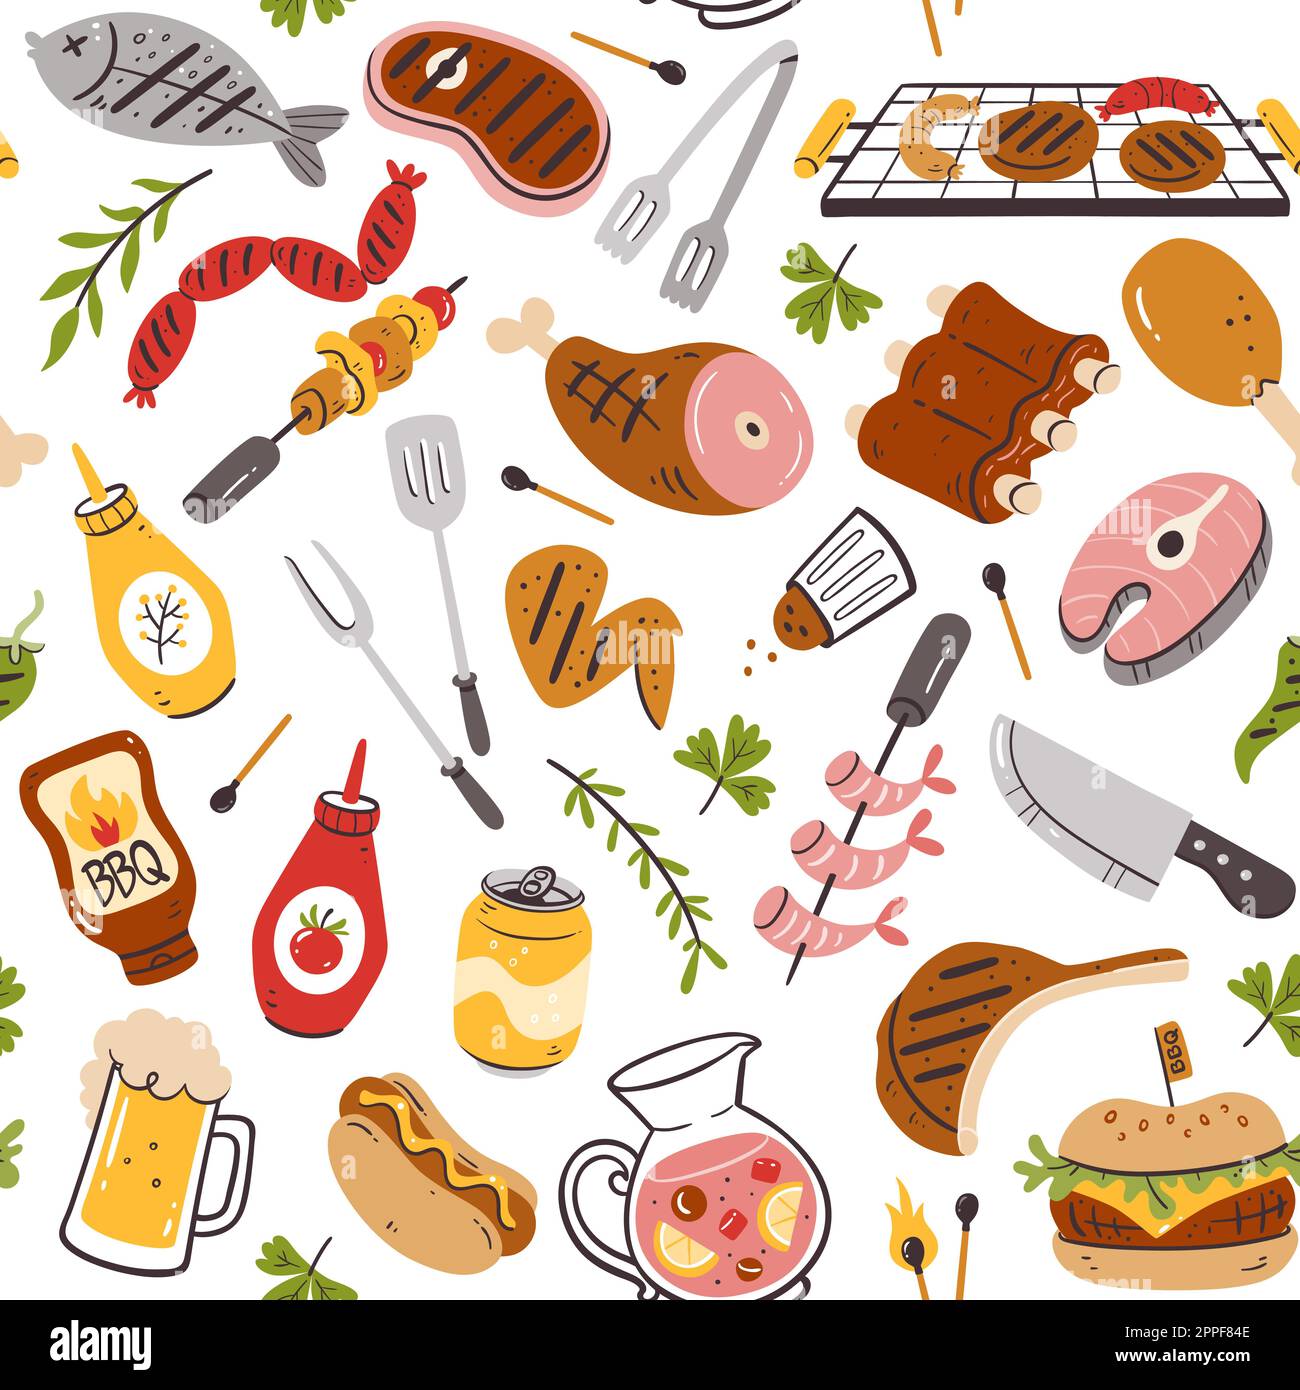 Nahtlose Grillparty mit Fleisch, Burgern, Würstchen und Barbecue-Utensilien. Isolierte Elemente auf weißem Hintergrund. Handgezeichnete Vektordarstellung Stock Vektor